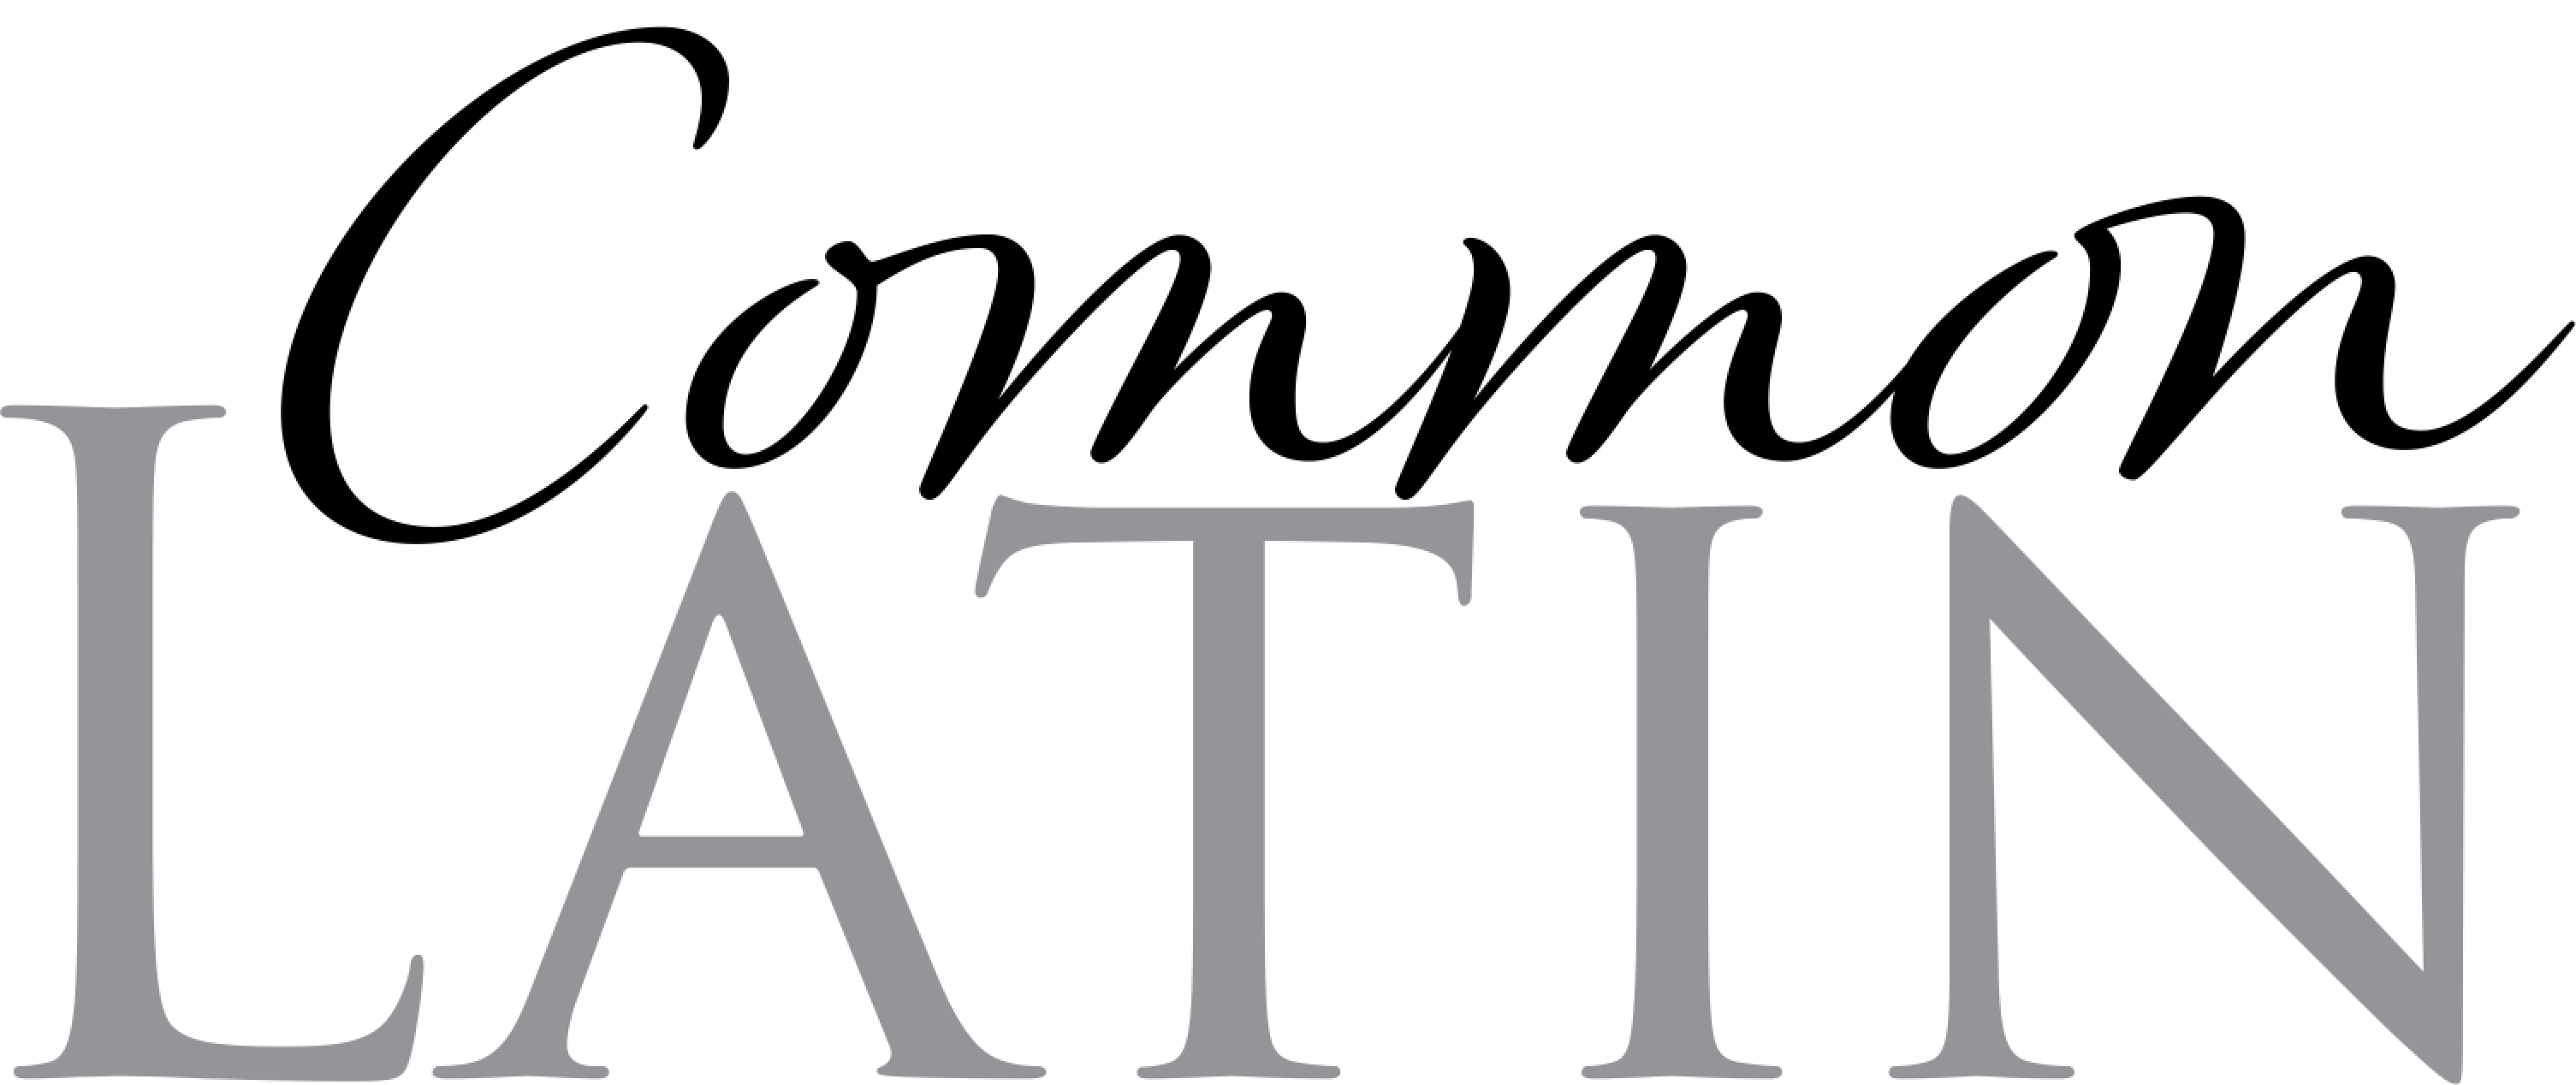 Common Latin logo